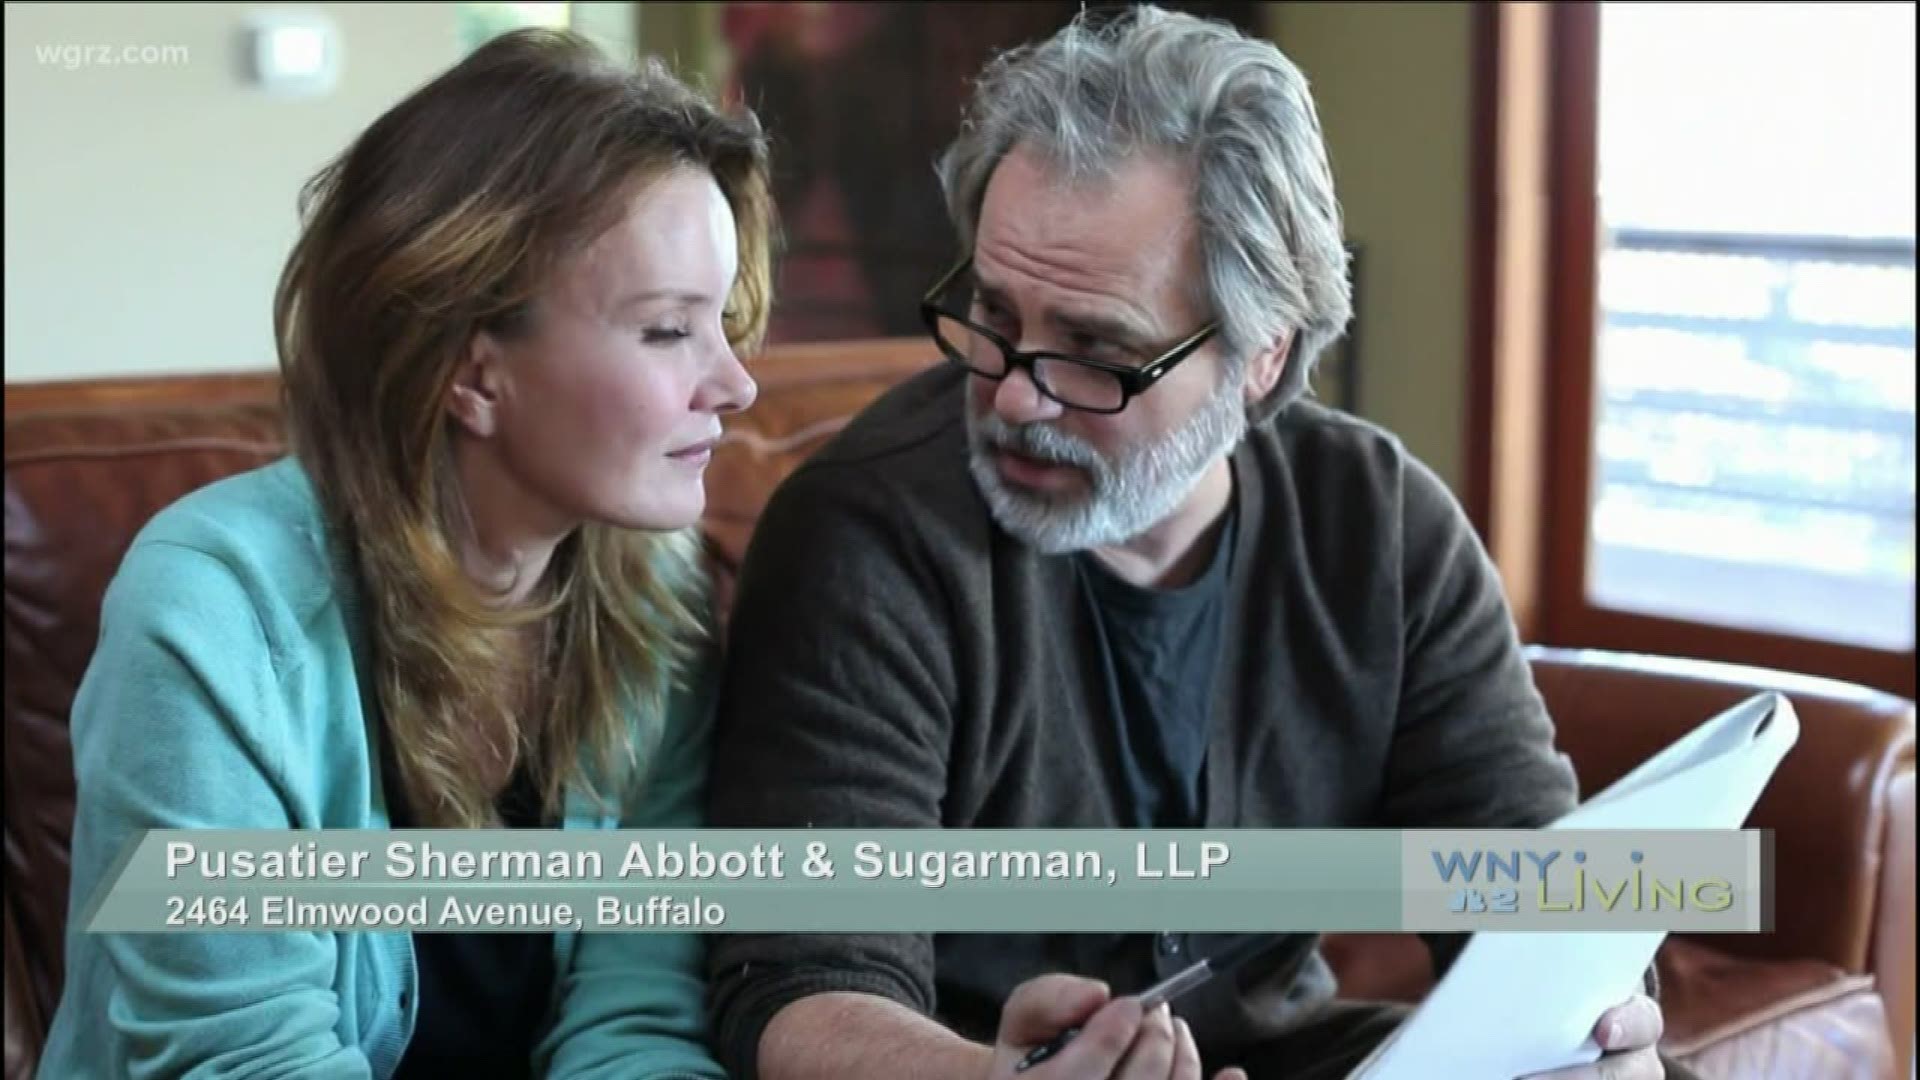 November 2 - Pusatier Sherman Abbott & Sugarman, LLP (THIS VIDEO IS SPONSORED BY PUSATIER SHERMAN ABBOTT & SUGARMAN, LLP)